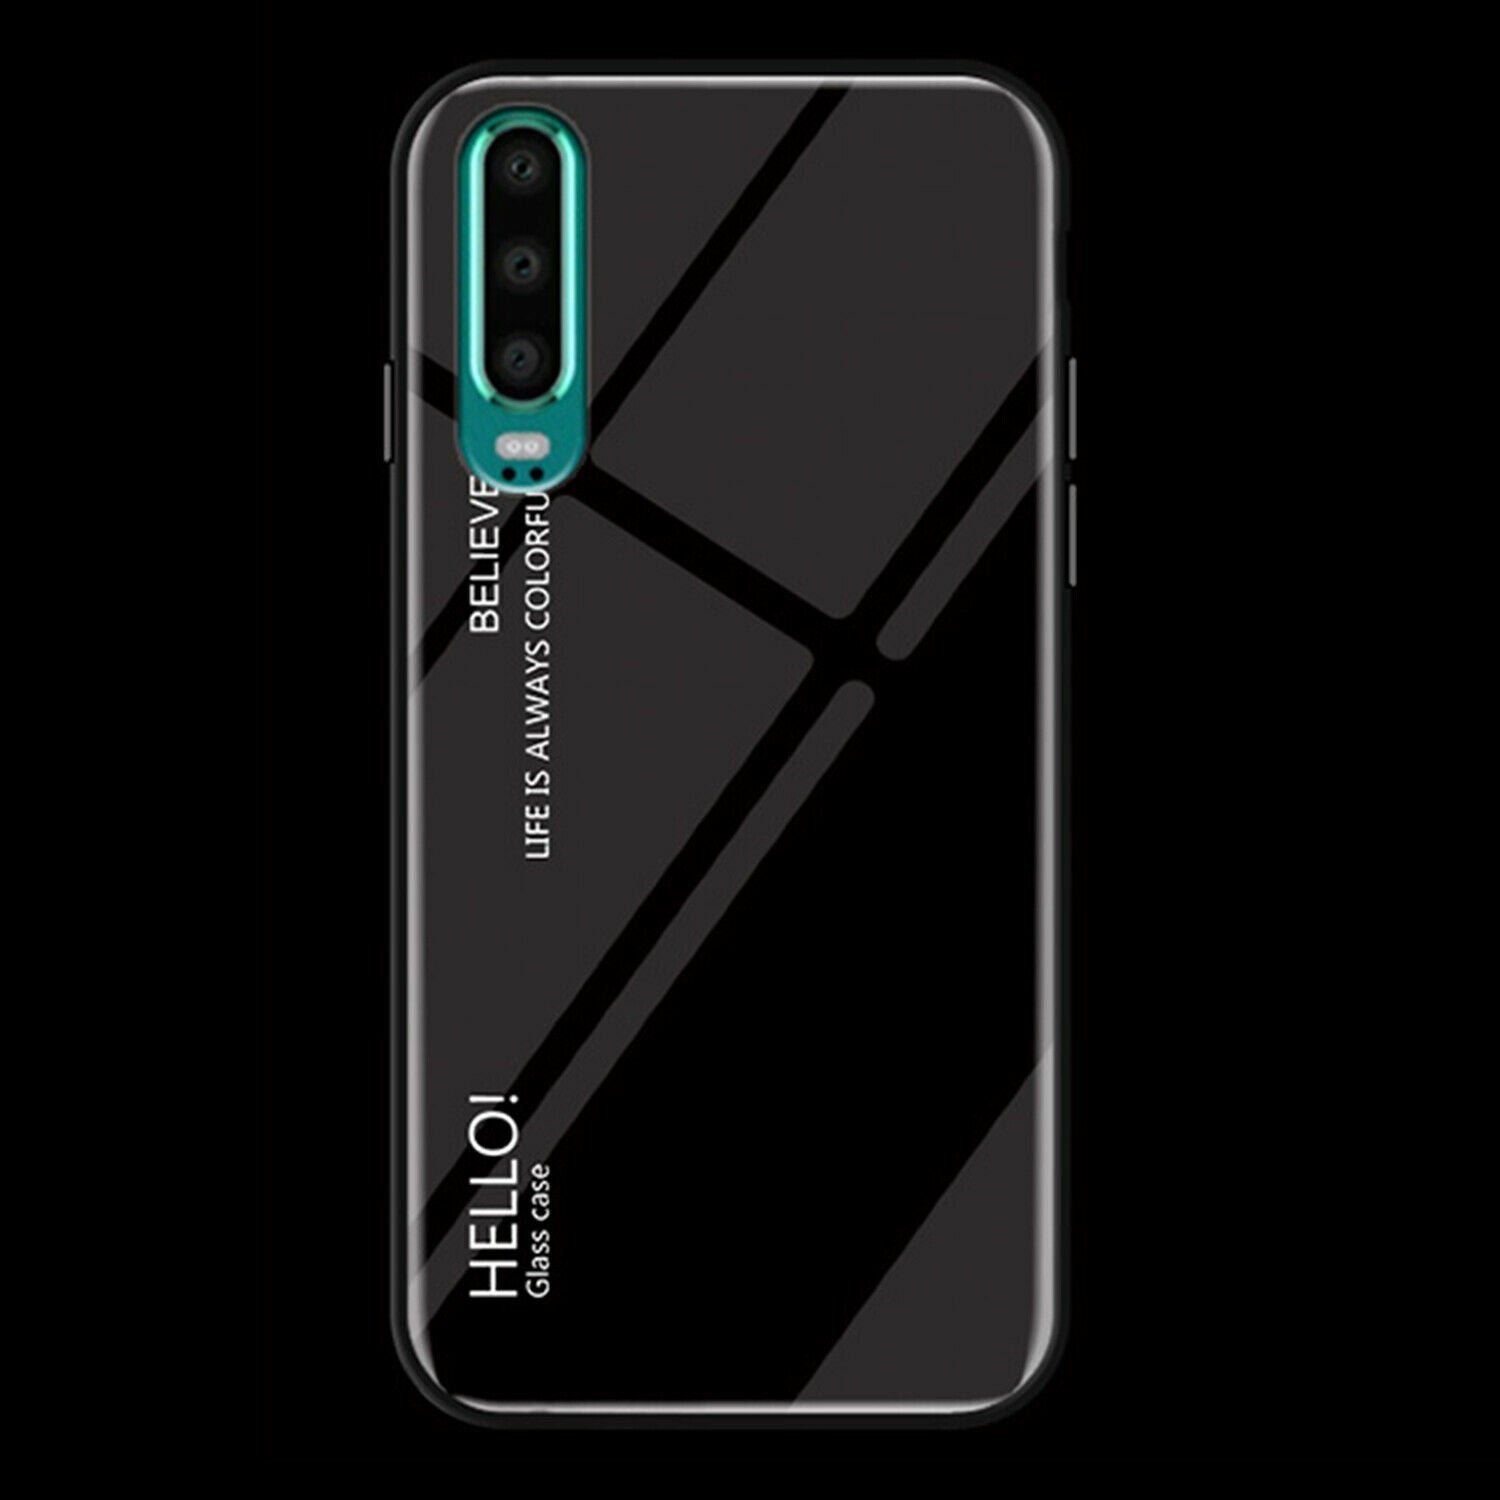 For Huawei Nova 3e Case Shockproof Tempered Glass Bumper Slim Cover-Black